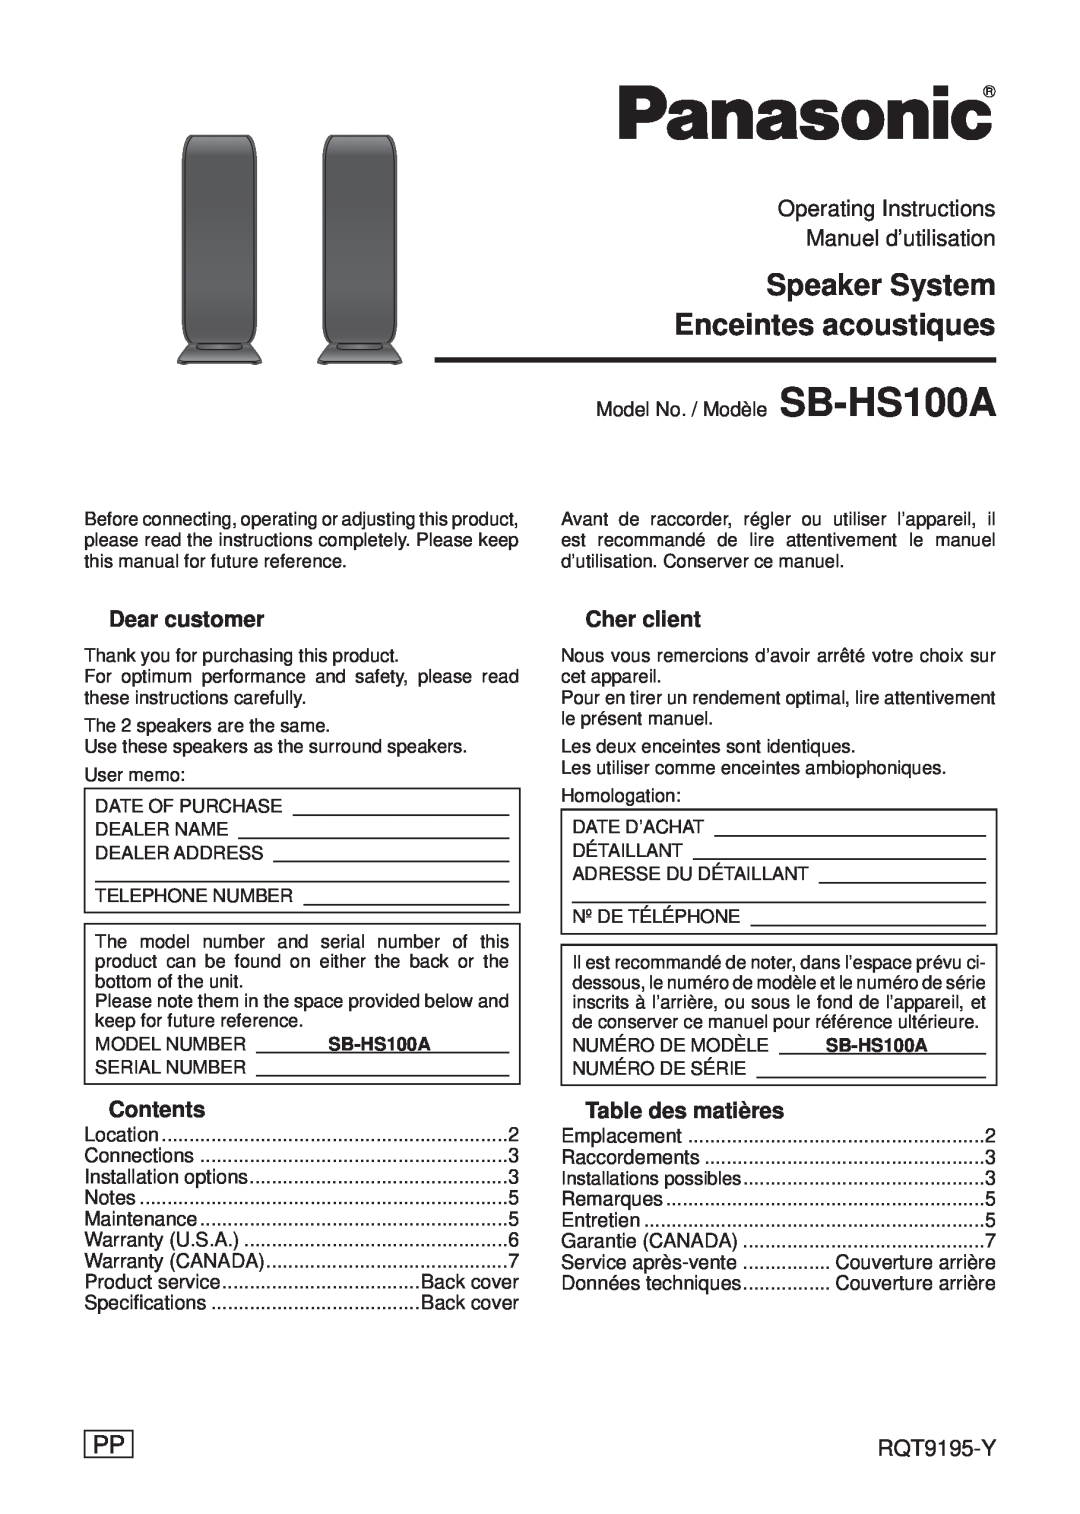 Panasonic SB-HS100A operating instructions Contents, Cher client, Table des matières, Speaker System, Manuel d’utilisation 